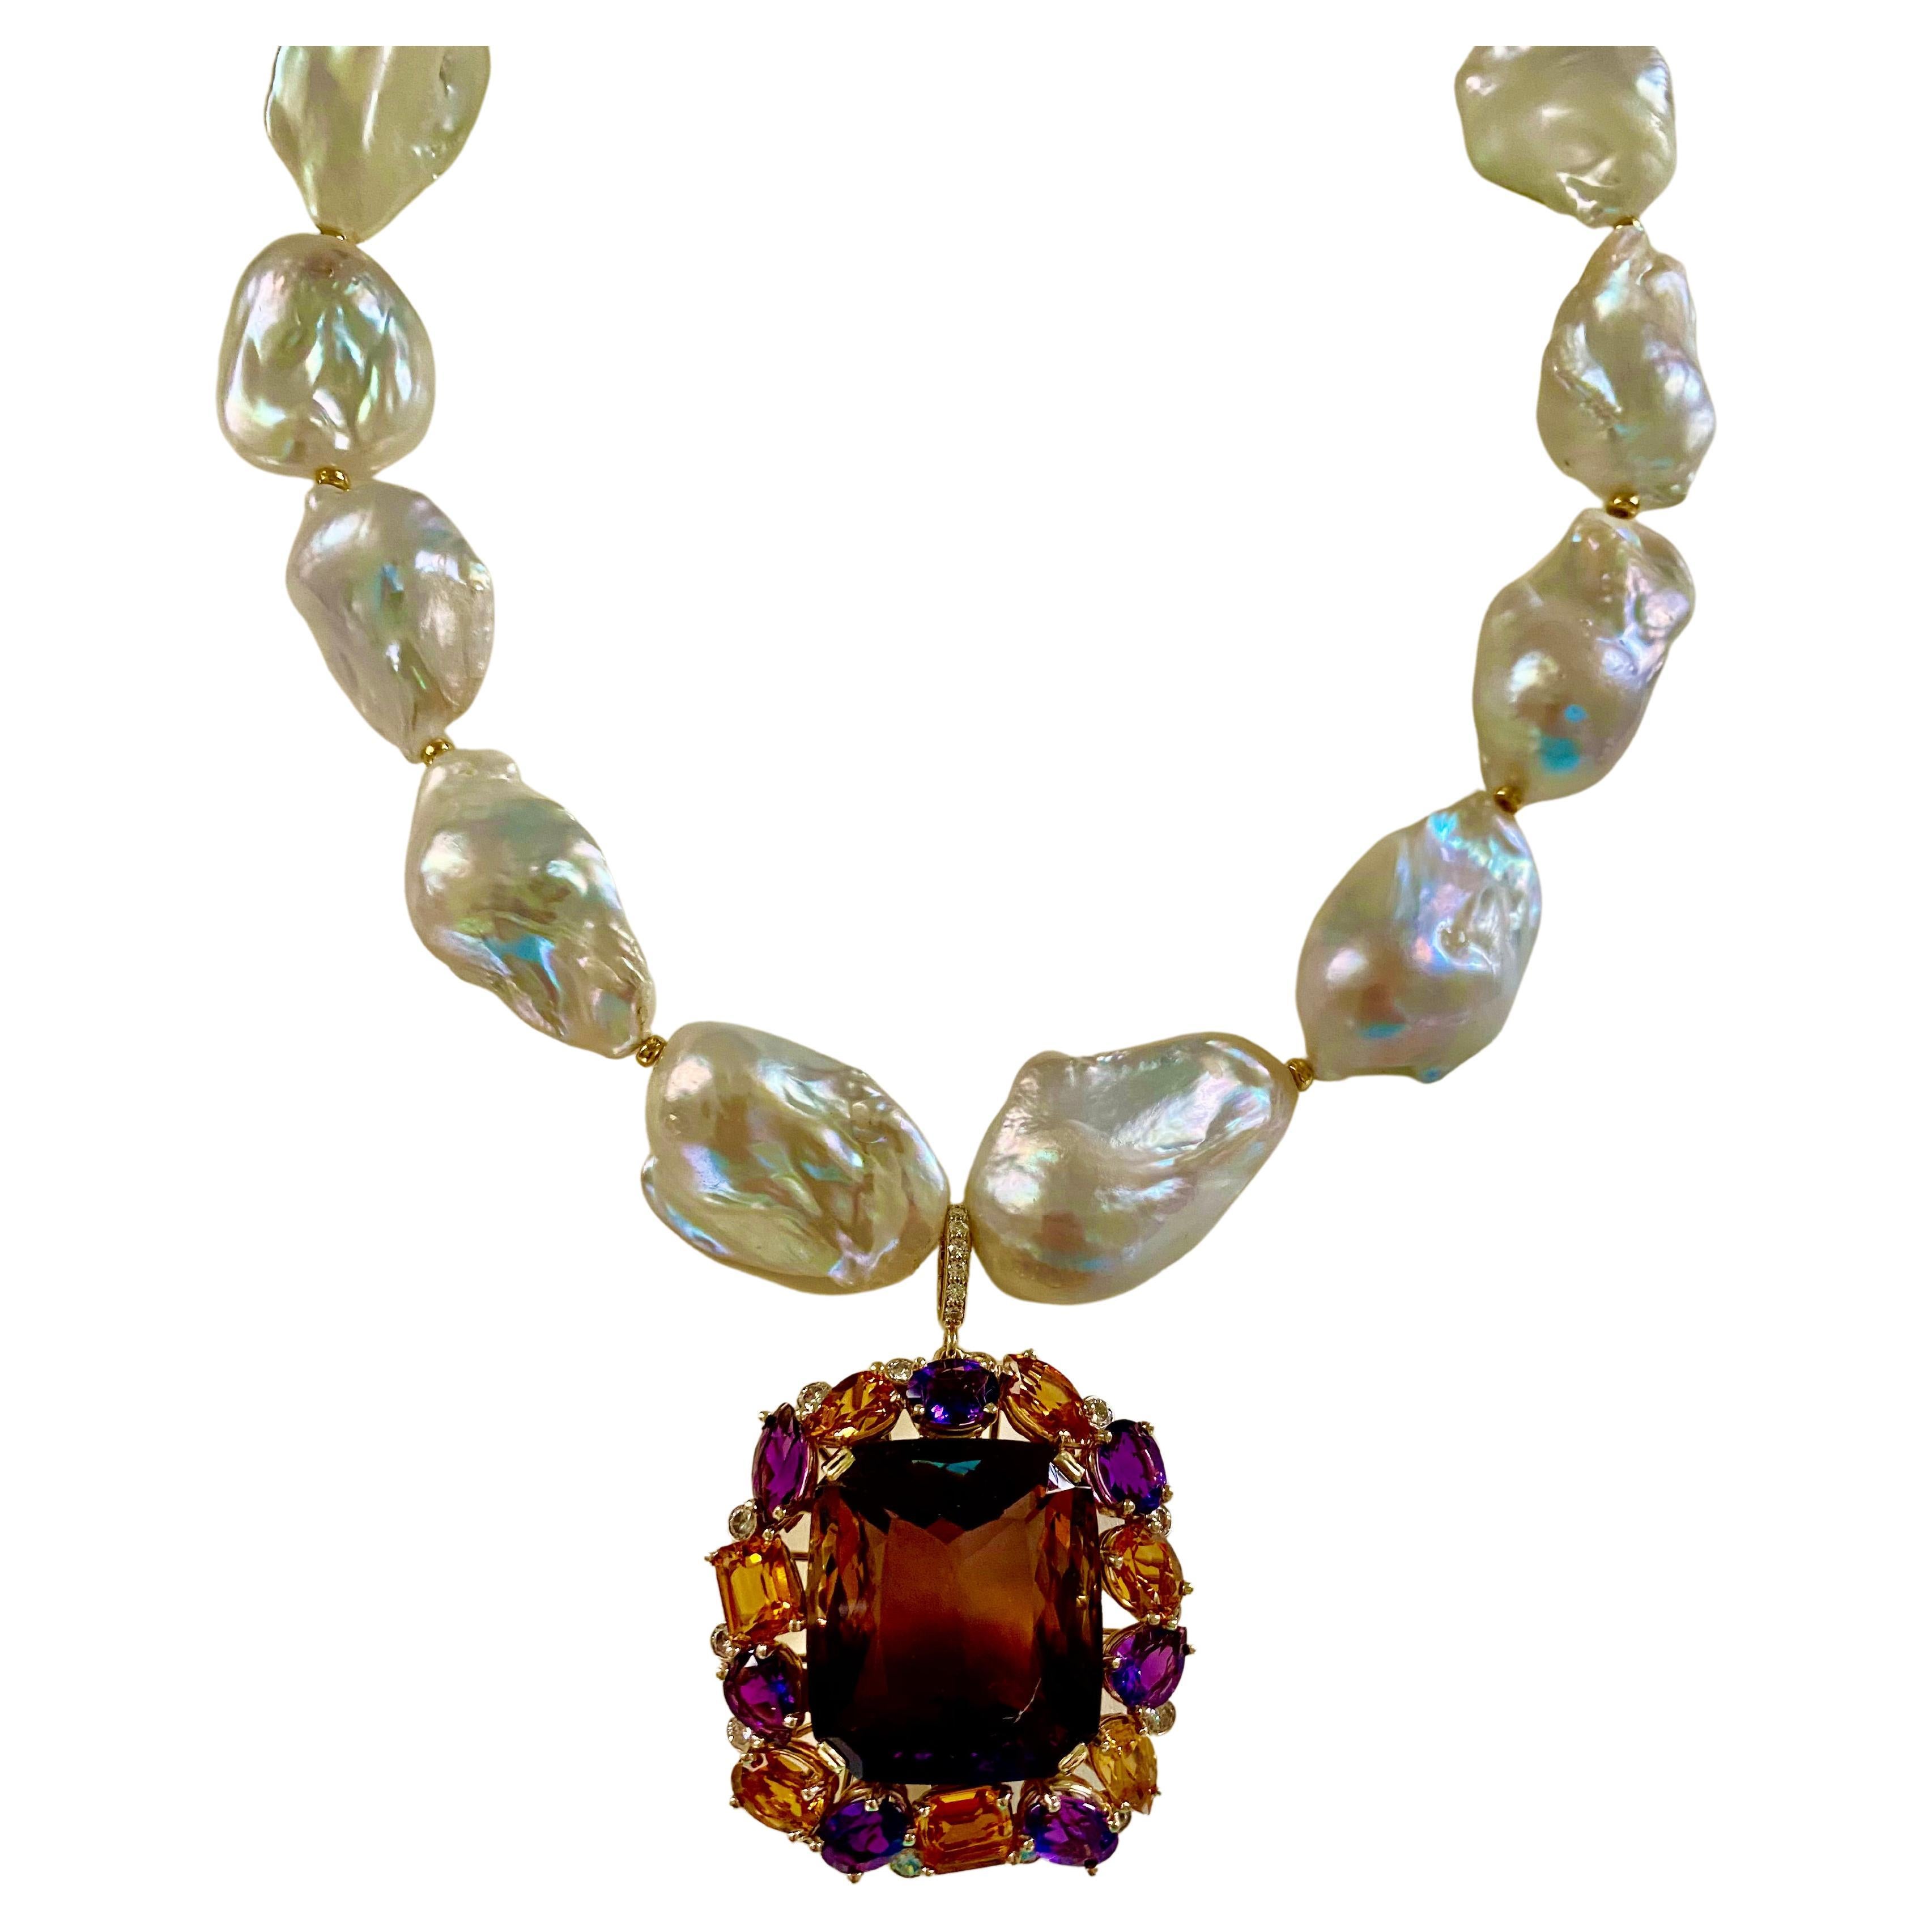 Une amétrine de qualité constitue le noyau de ce collier extravagant et unique en son genre.  L'amétrine (origine : Bolivie) pèse 72,76 carats et est richement colorée en violet et en jaune.  La gemme est bien taillée et polie dans une coupe coussin